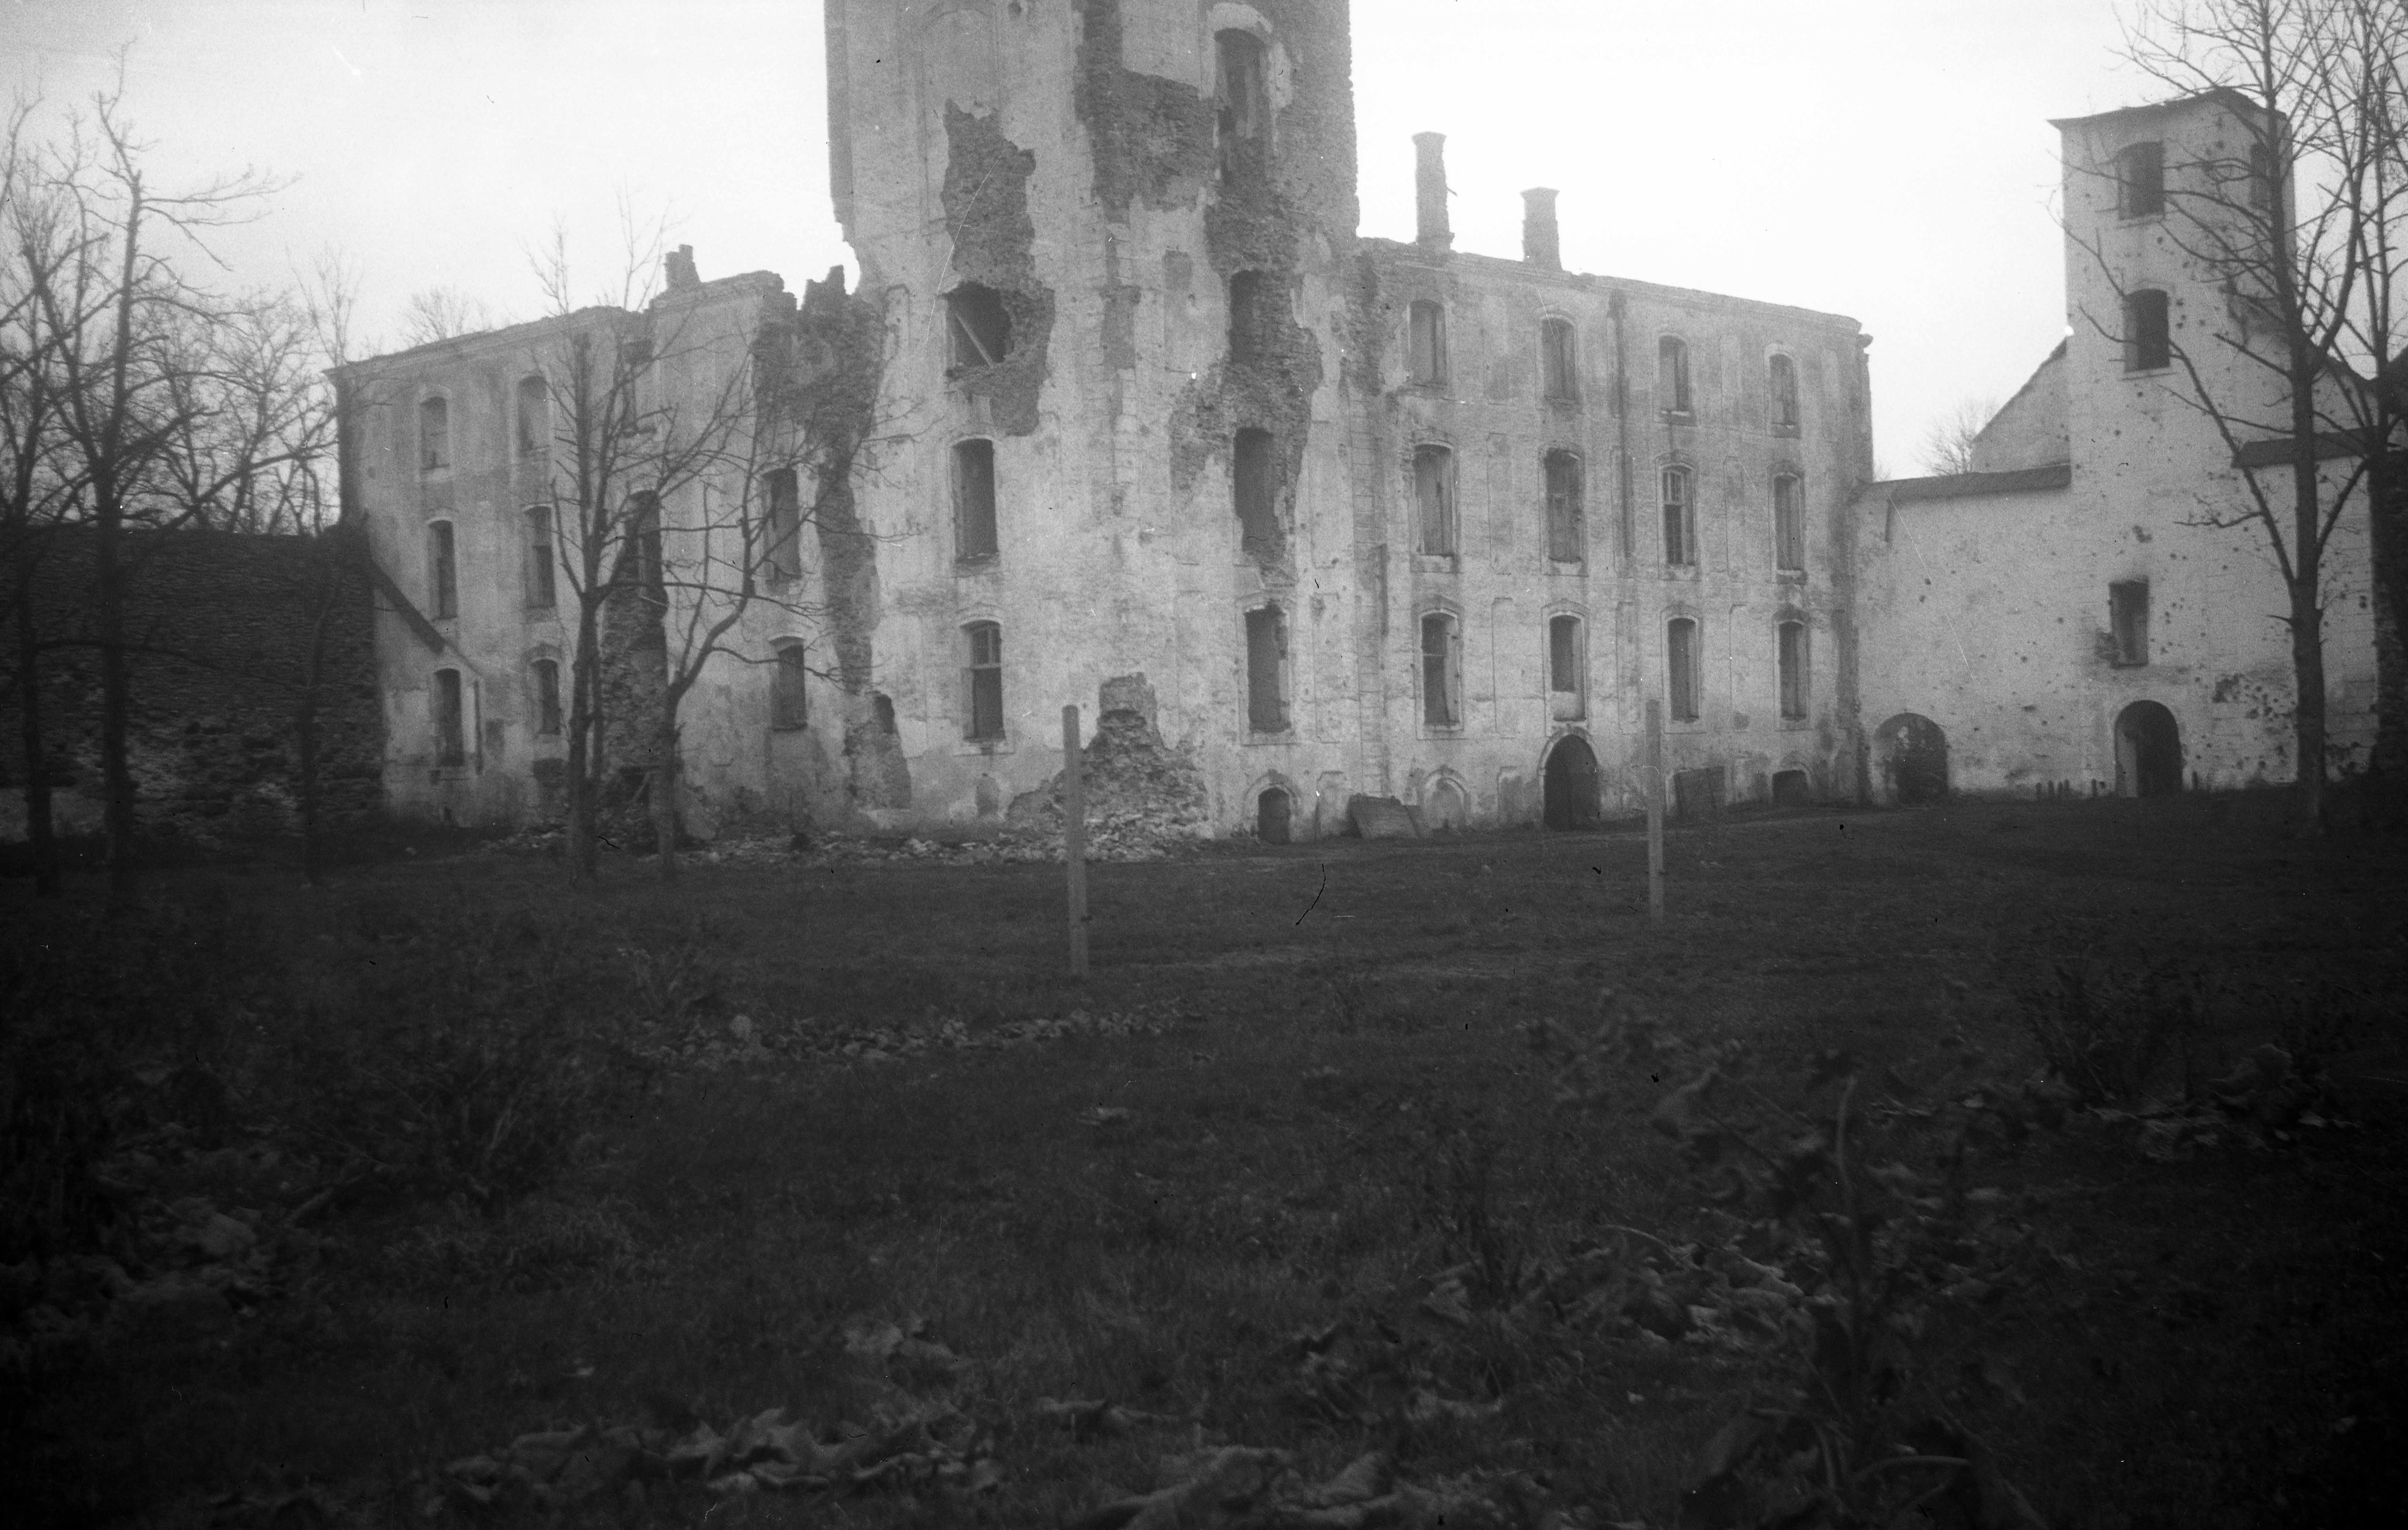 External view of Põltsamaa Castle W (after World War II destruction works)